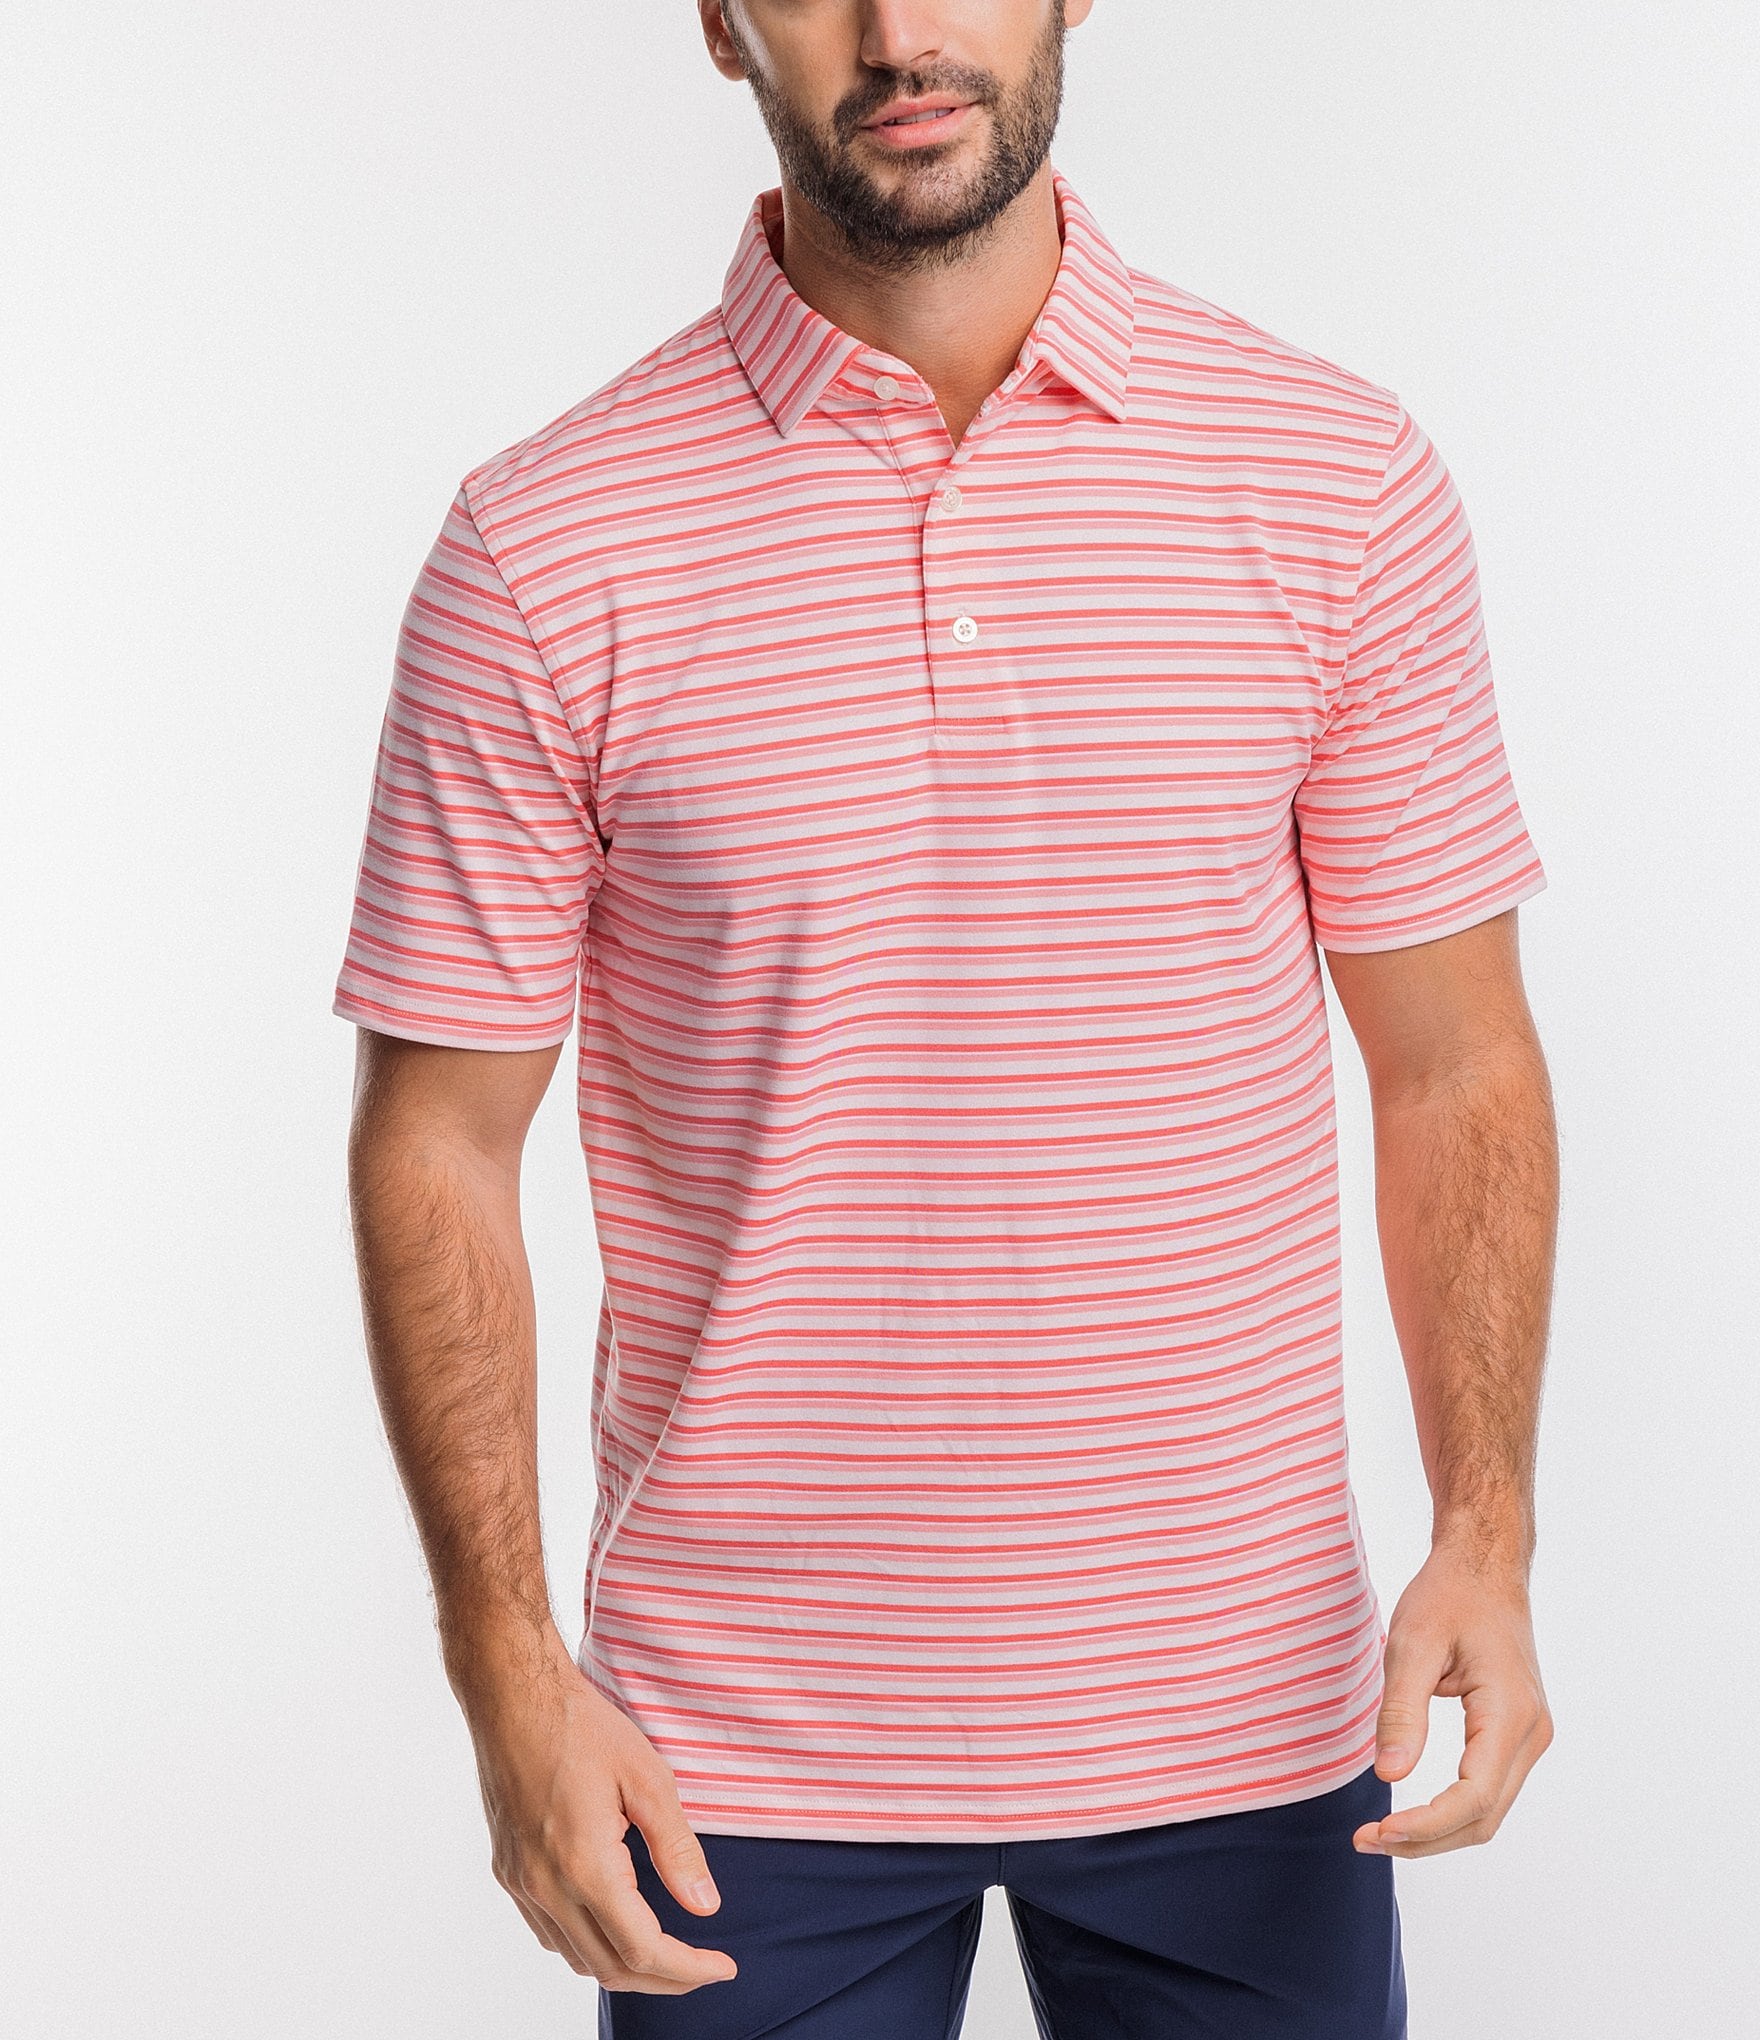 Southern Tide Pink Stripe Long Sleeve Button Down Shirt Mens Size XL -  beyond exchange